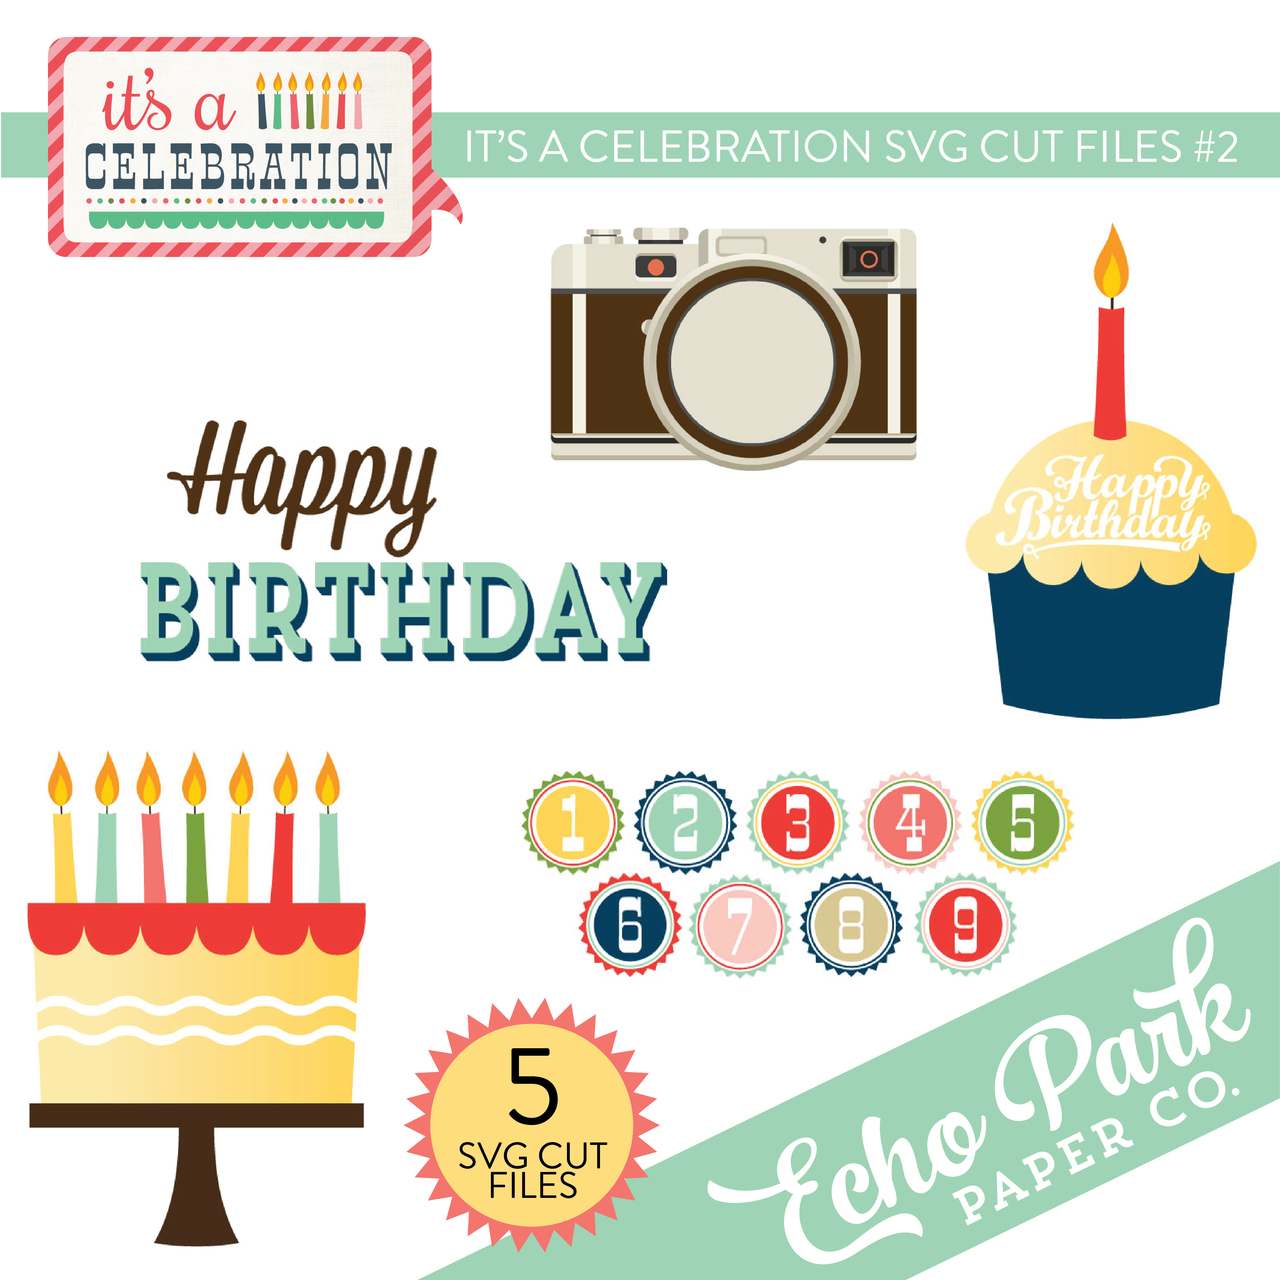 It's A Celebration SVG Cut Files #2